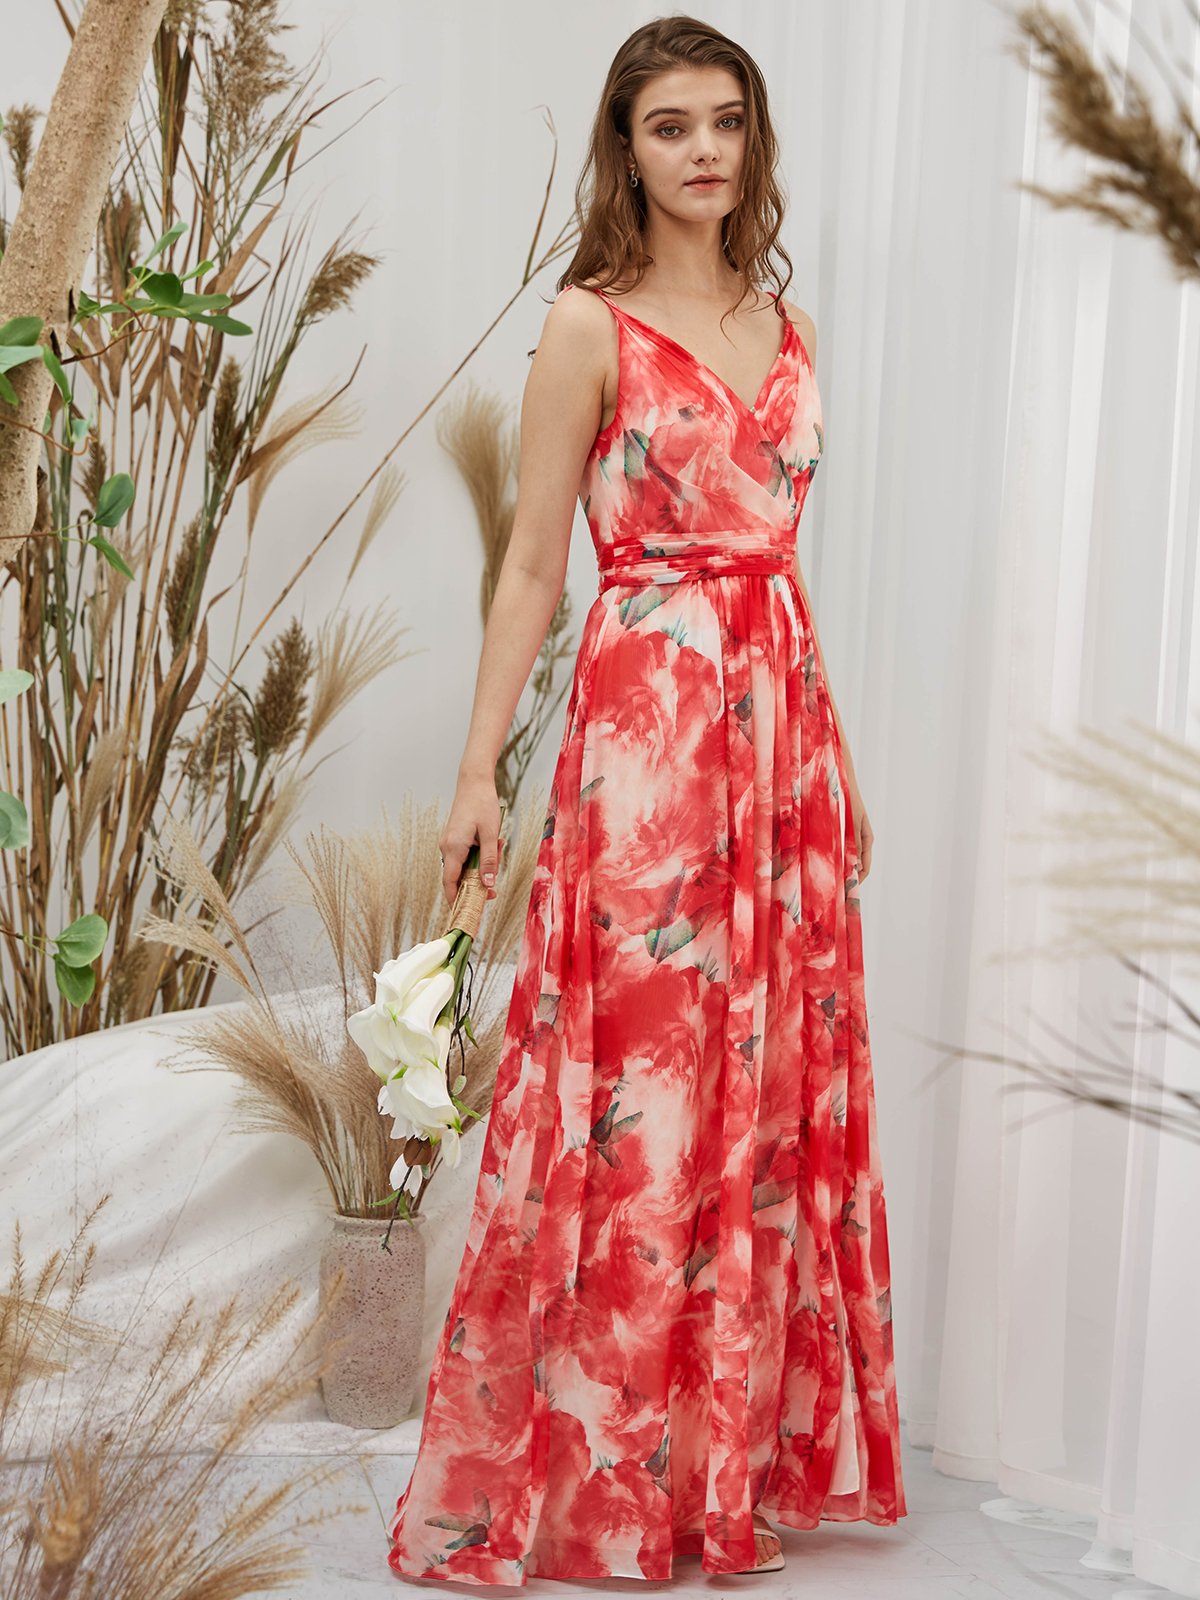 MissJophiel One Shoulder Chiffon Print Floral Red Floor Length Formal Evening Gown